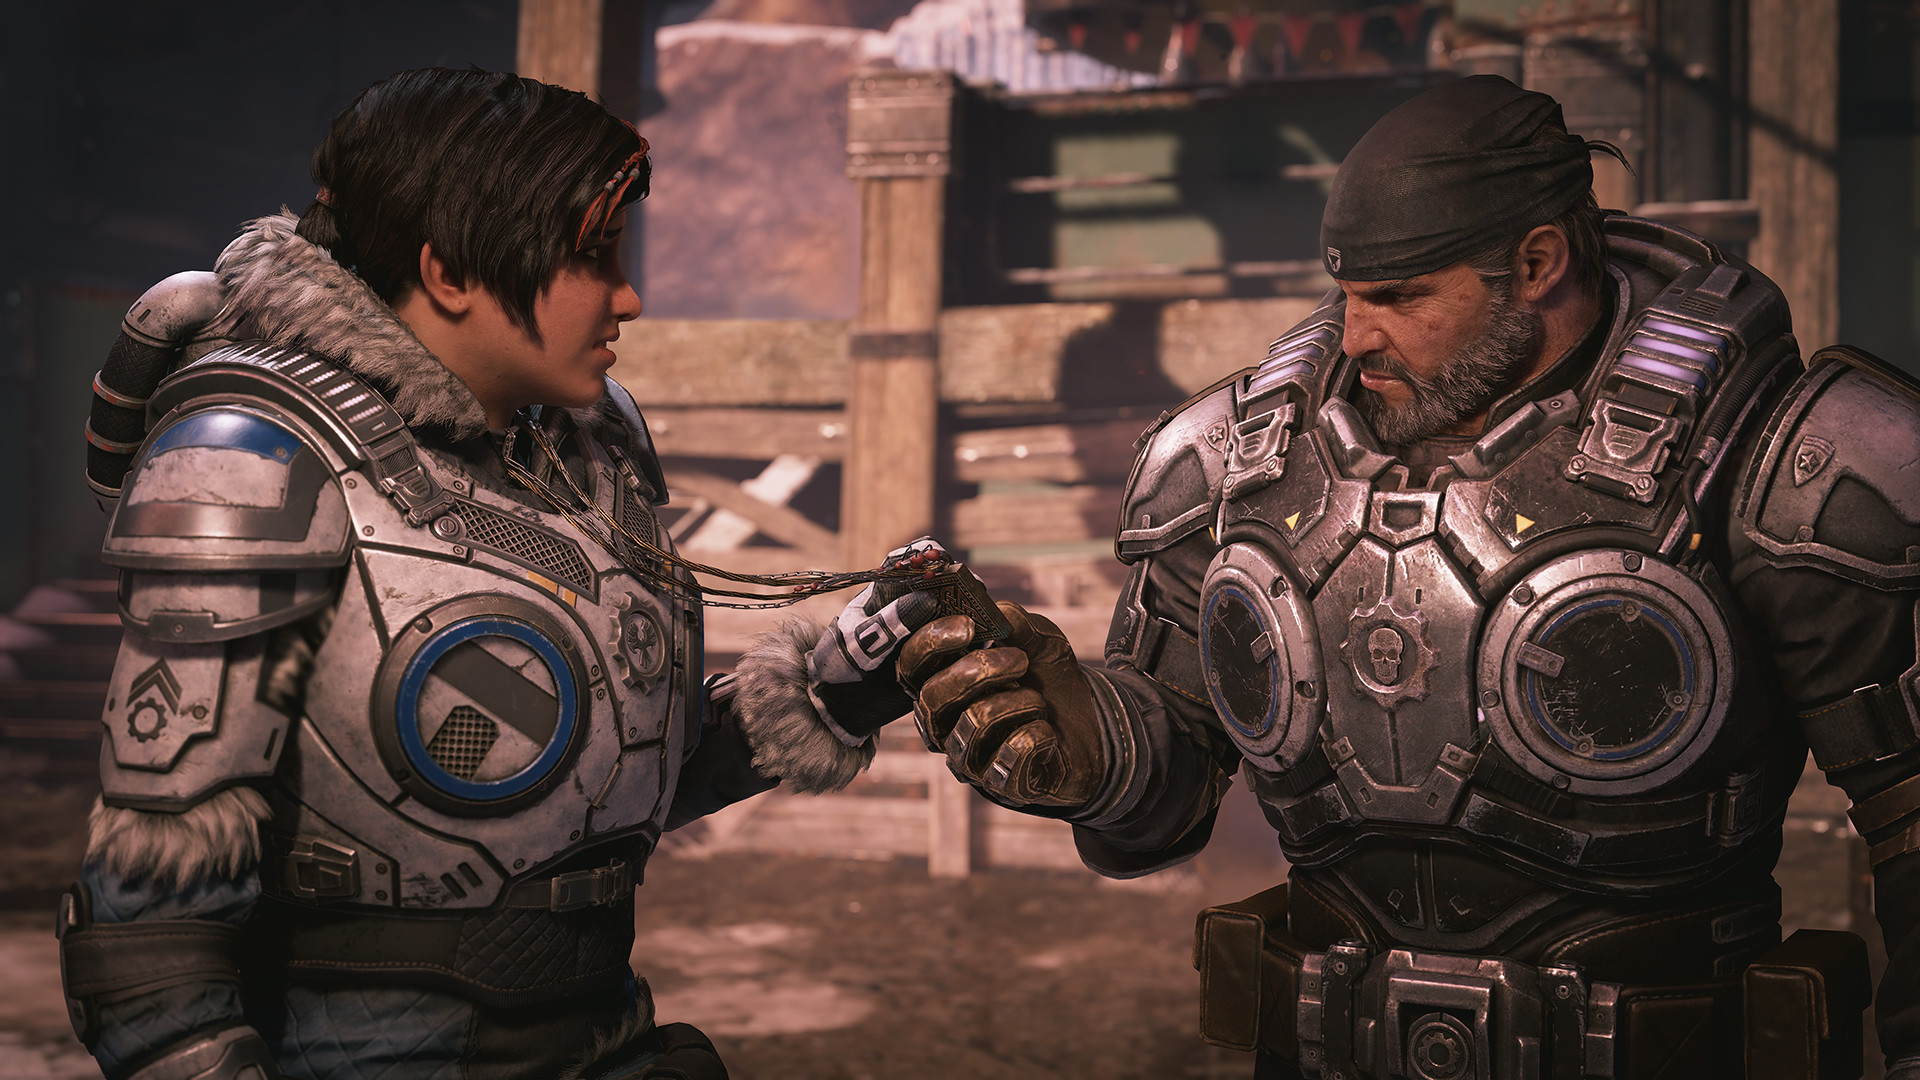 Gears 5 está temporariamente de graça na Steam e Windows Store